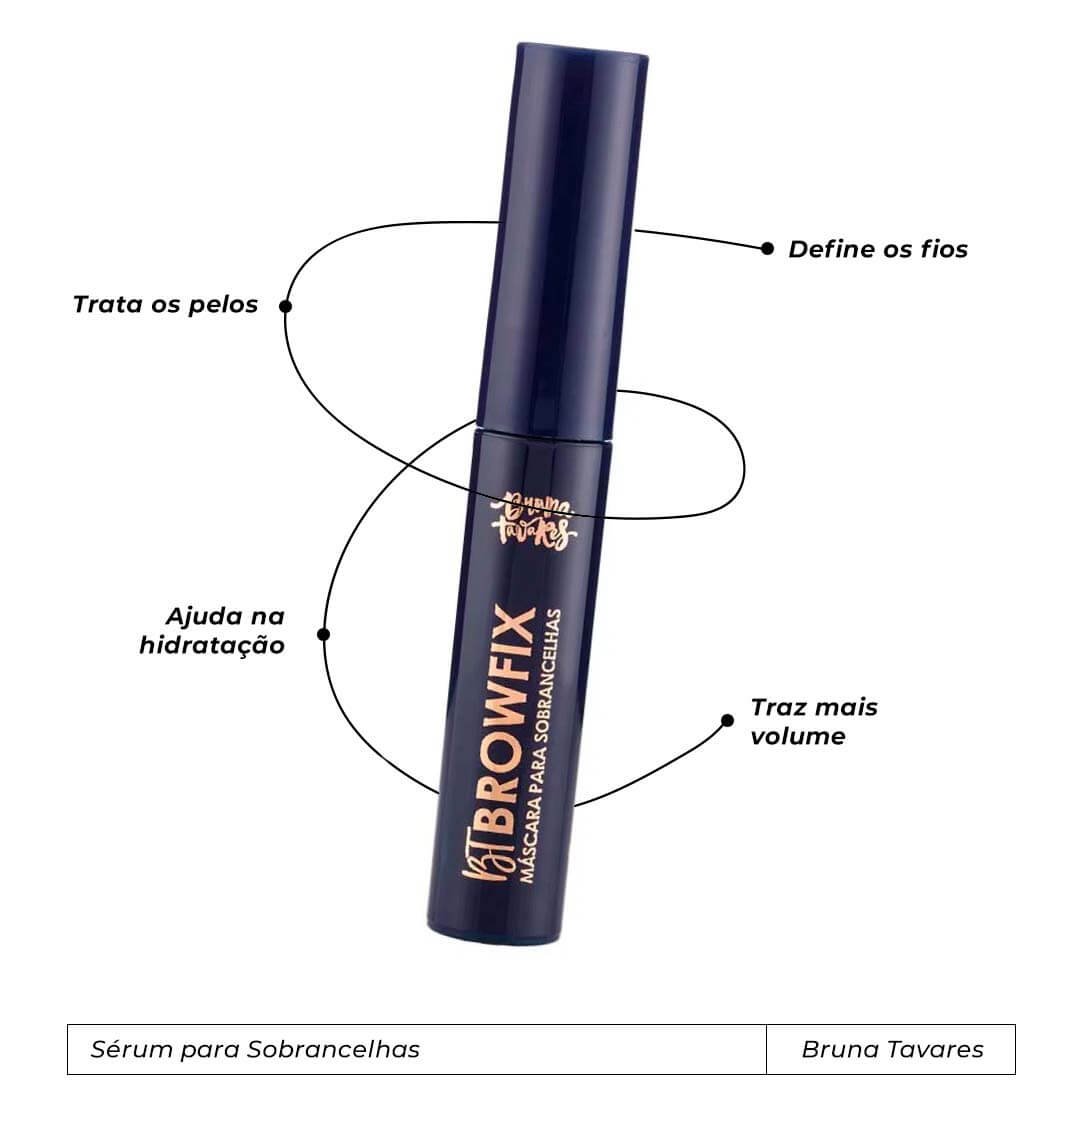 bruna tavares - serum-para-sobrancelha - produtos de maquiagem - inverno  - brasil - https://stealthelook.com.br